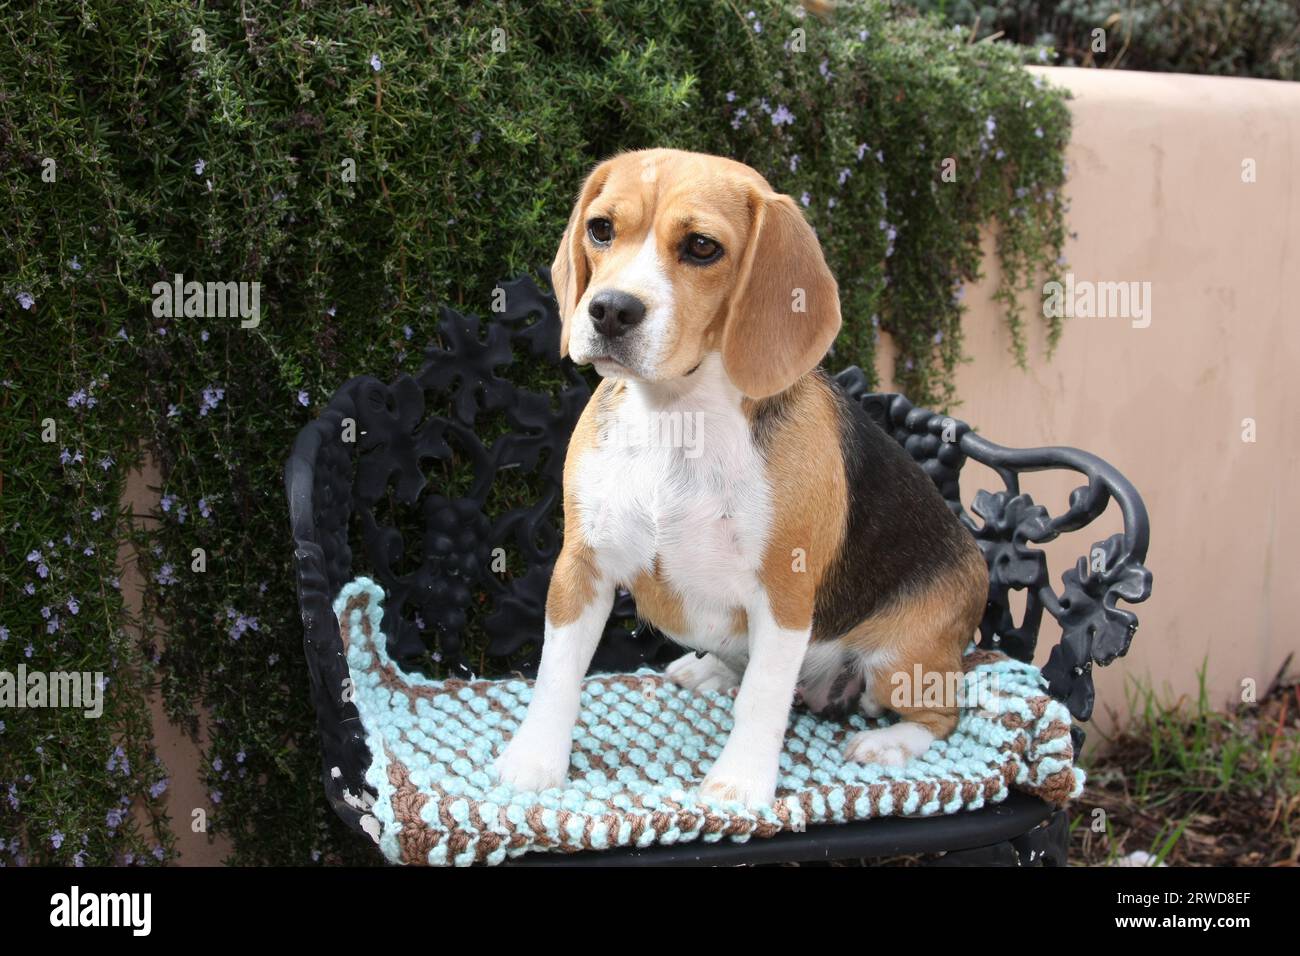 Beagle seduto su una sedia in ferro battuto con imbottitura davanti a una parete con vegetazione Foto Stock